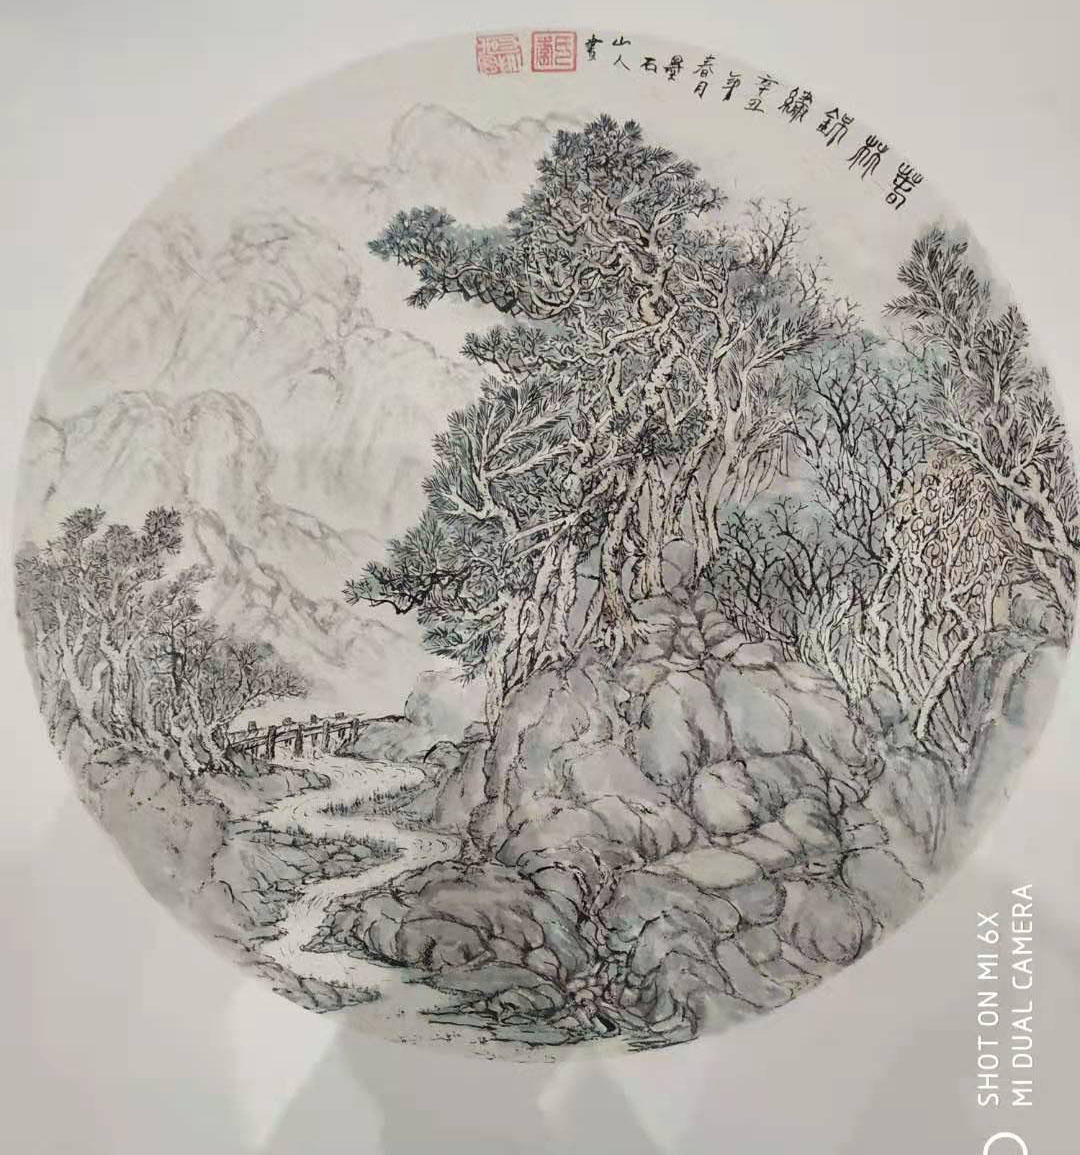 中国大众文化学会名人书画艺术发展委员会——李明